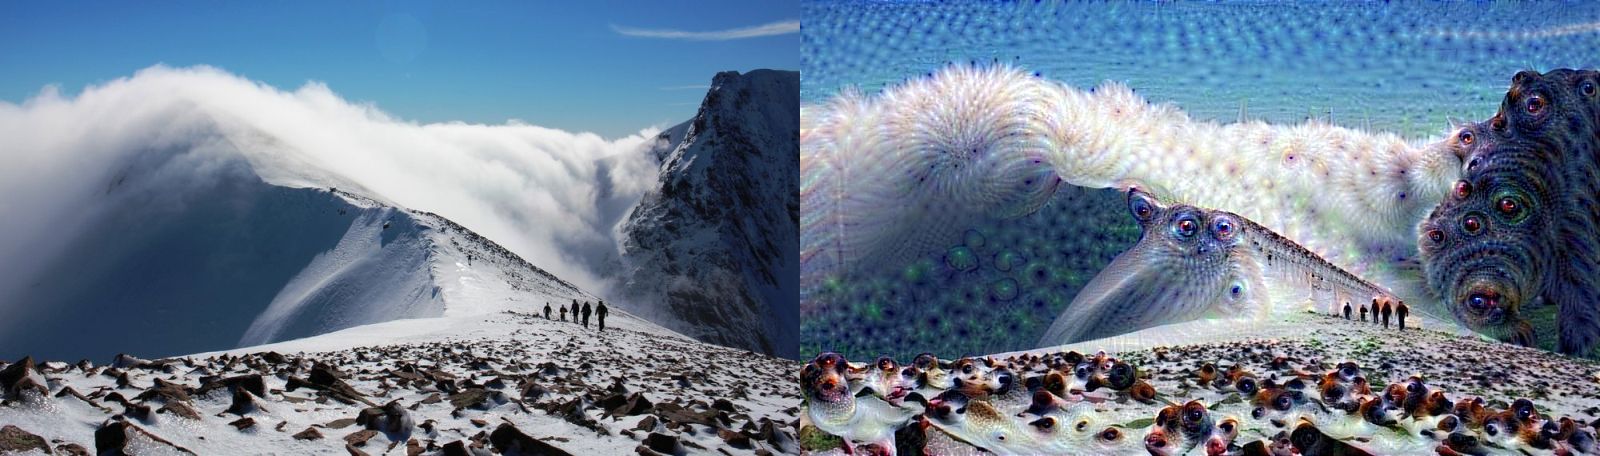 Горы в сюрреалистических фотографиях нейронной сети Deep Dream Google